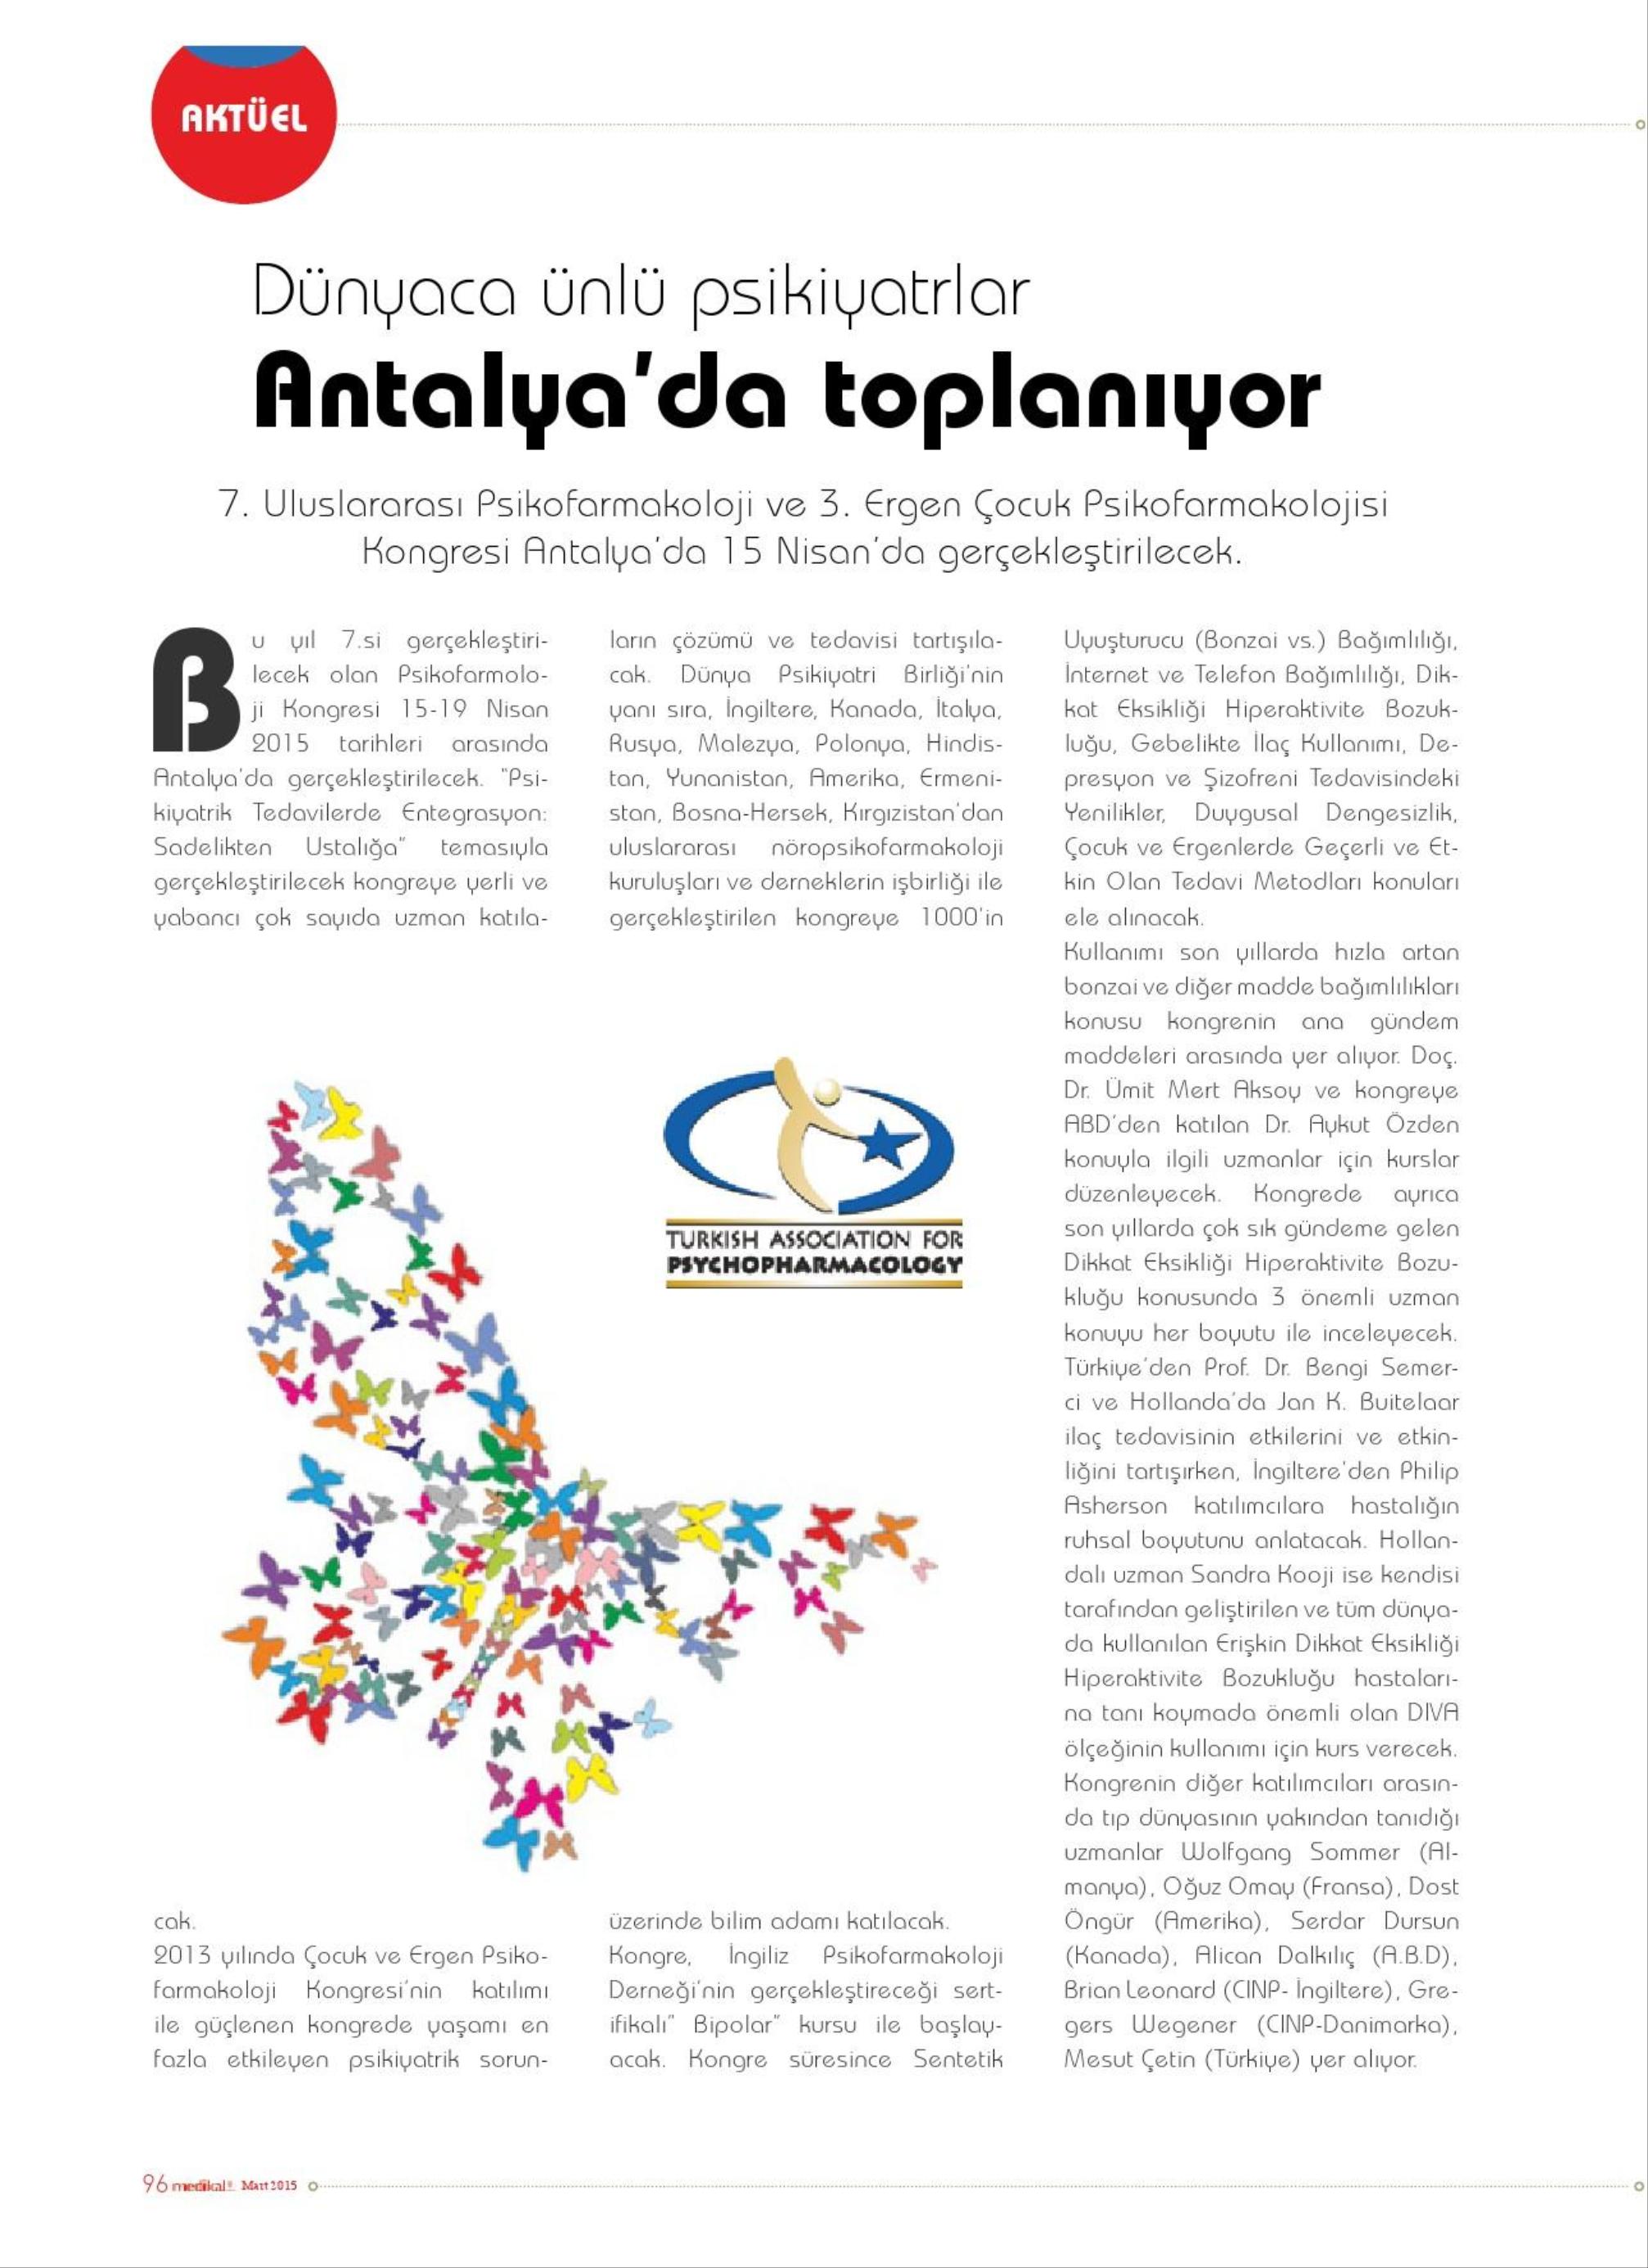 Dünyaca Ünlü Psikiyatrlar Antalya'da Toplanıyor - MEDİKAL & TEKNİK 01.03.2015 